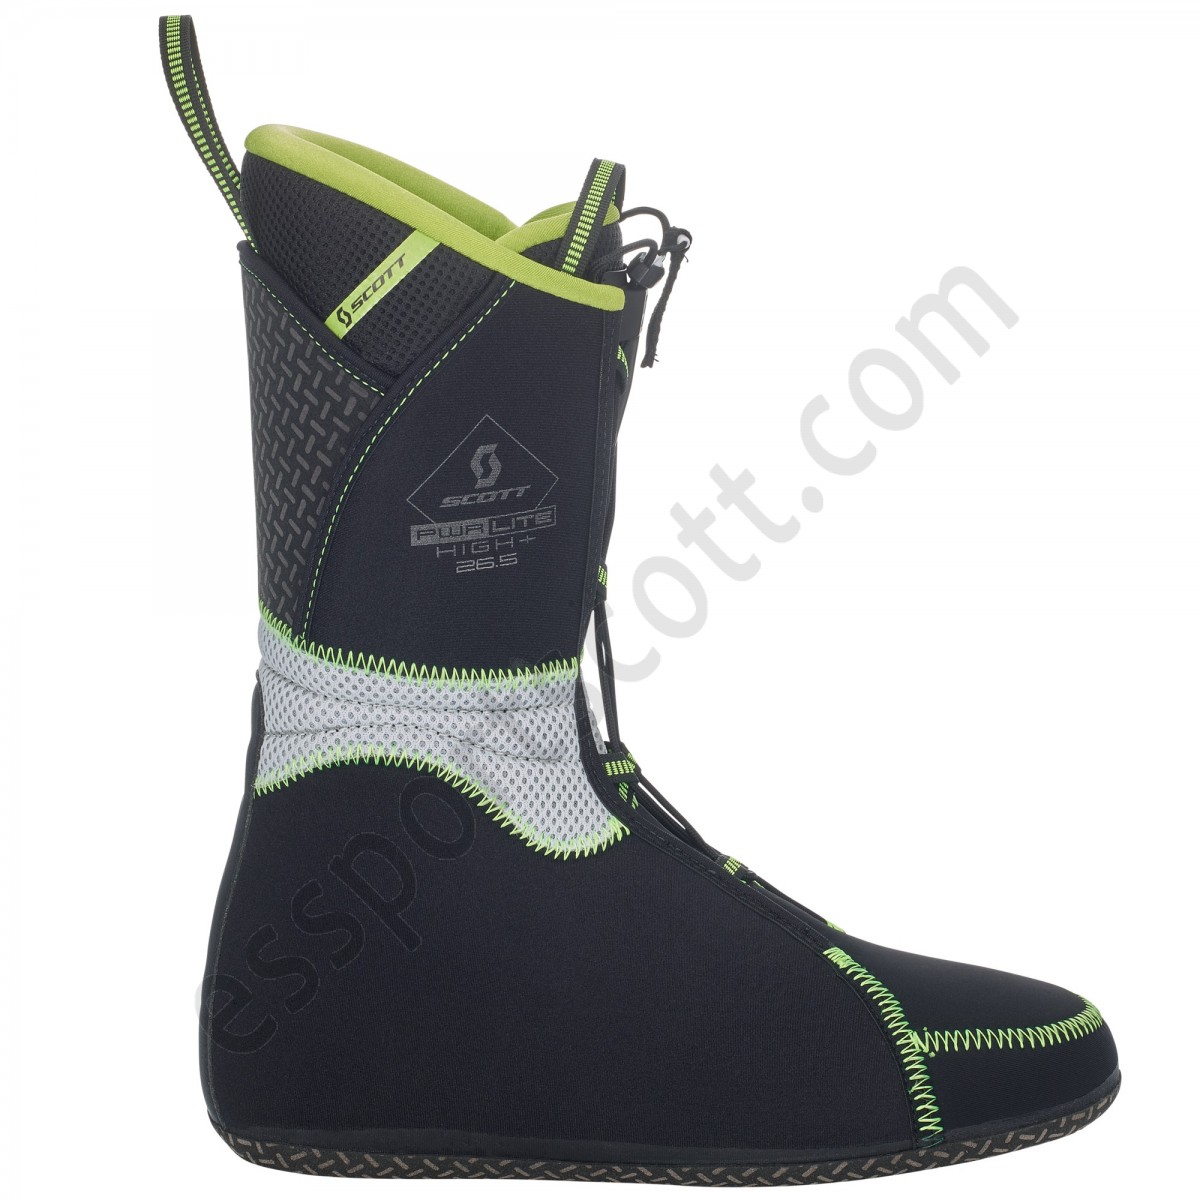 Scott Tienda ◇ Superguide Carbon Ski Boot - -2